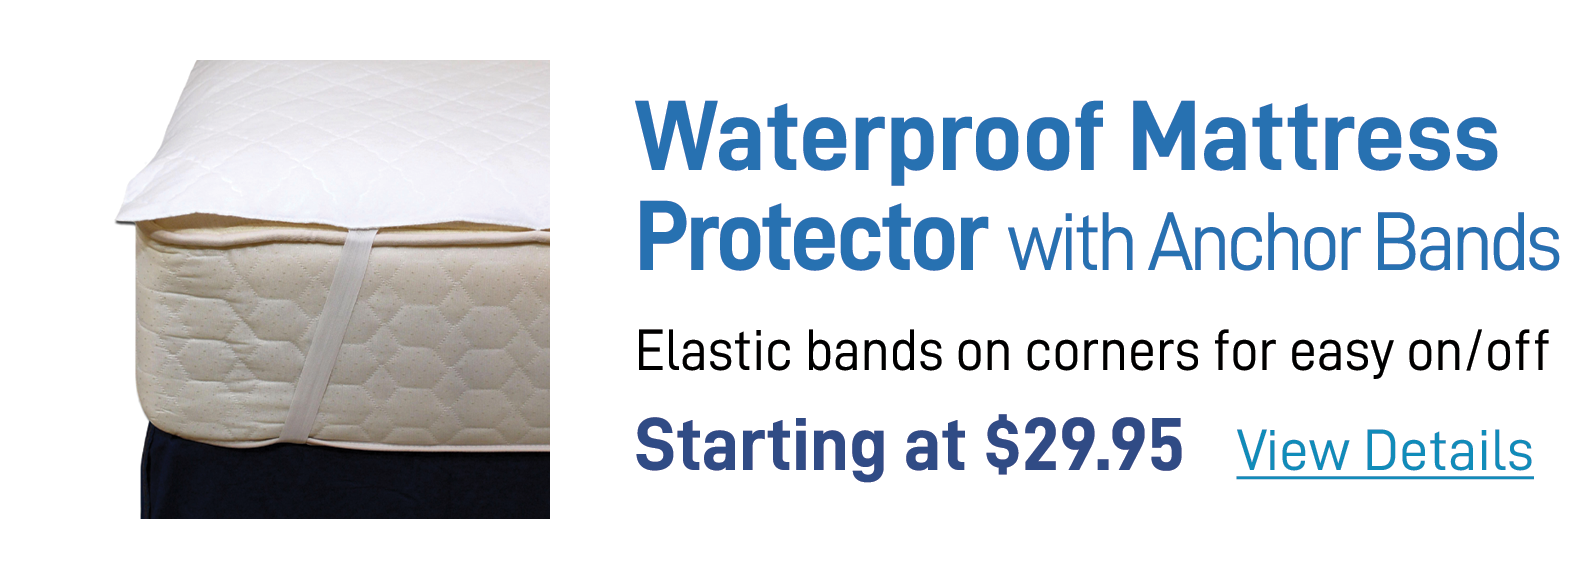 Anchor Band Waterproof Mattress Protector